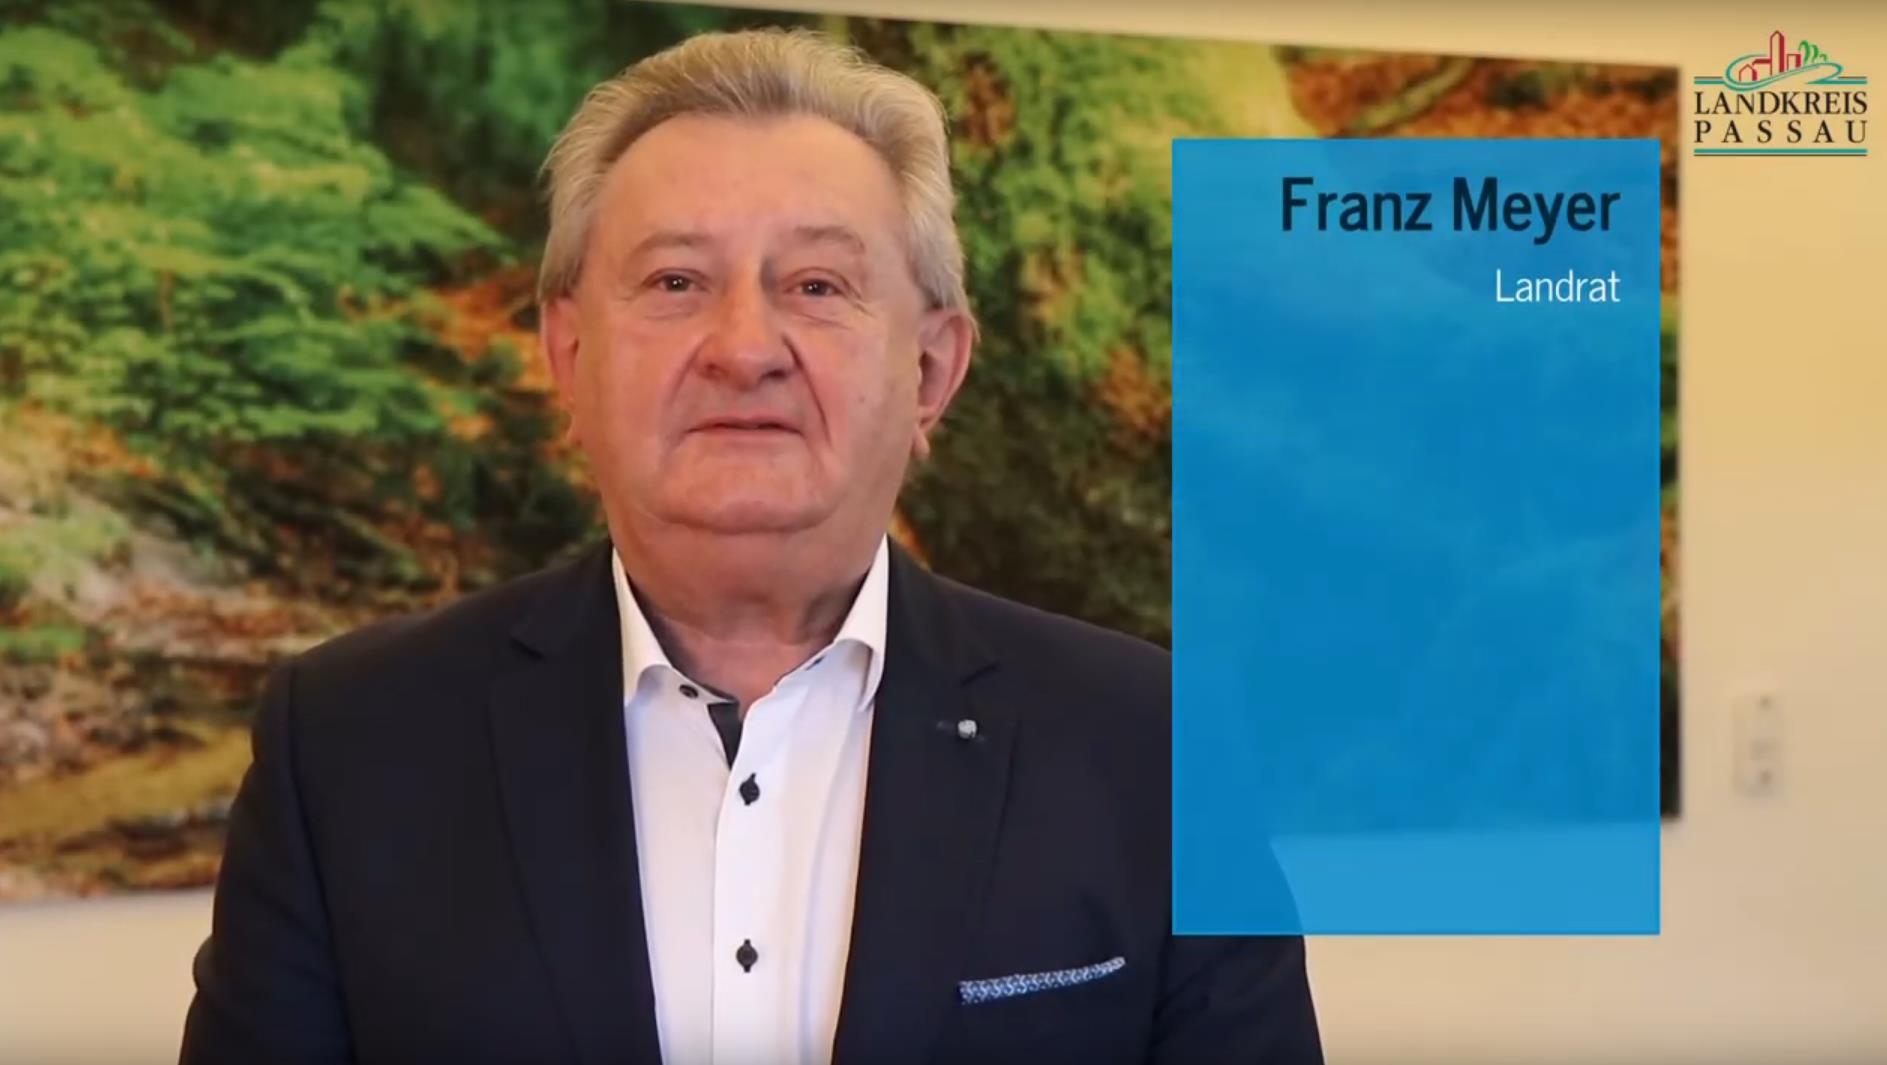 Videobotschaft zum Amtswechesl des Passauer Landrats